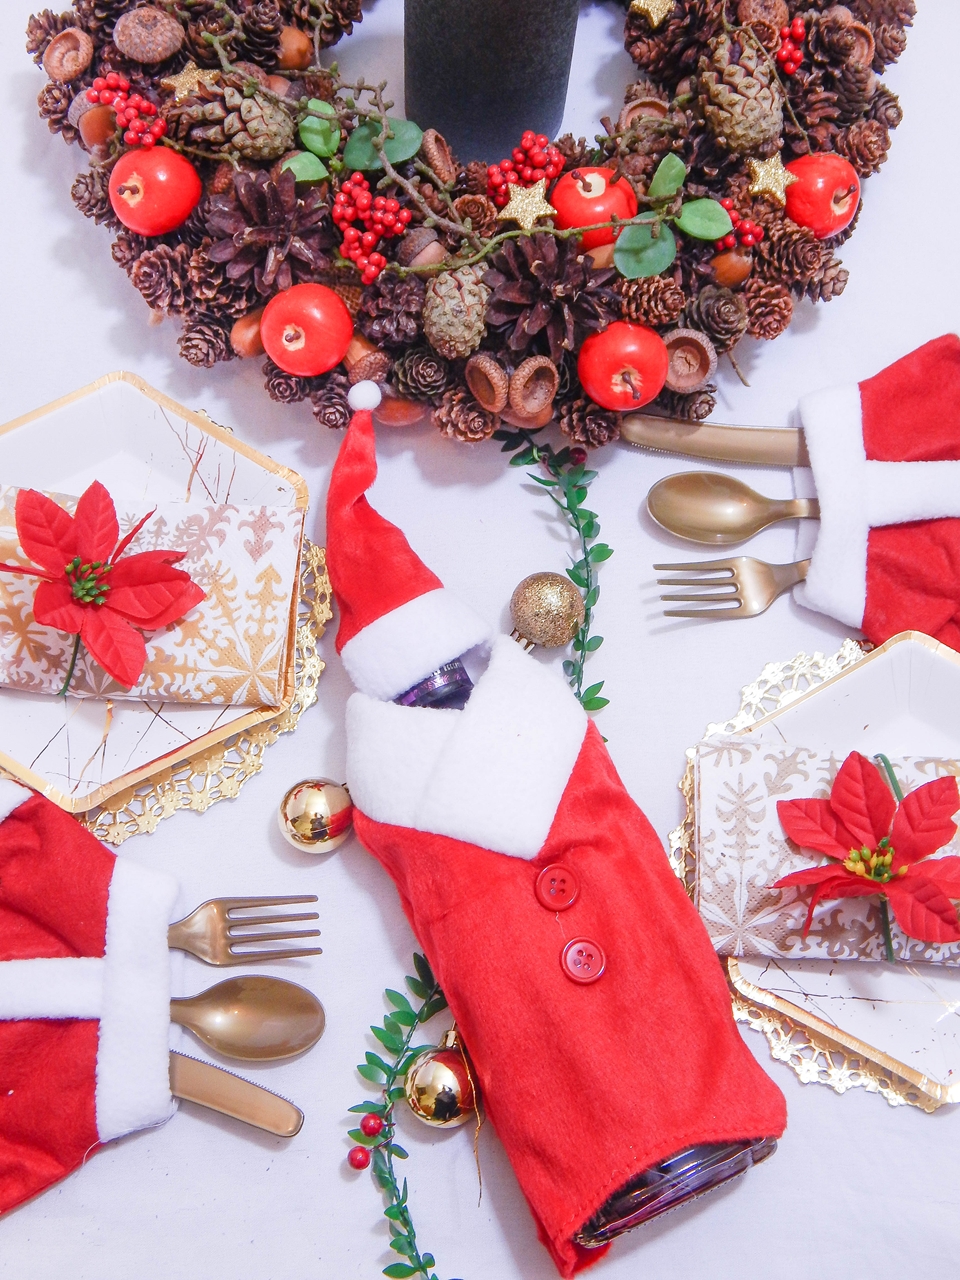 14 dekoracja świątecznego stołu jak udekorować stół na boże narodzenie dekoracja kolacja wigilijna dekoracja stroik na stół wigilijny wianek świeczka mikołajowe ubrania na butelki mikołaje na sztućce